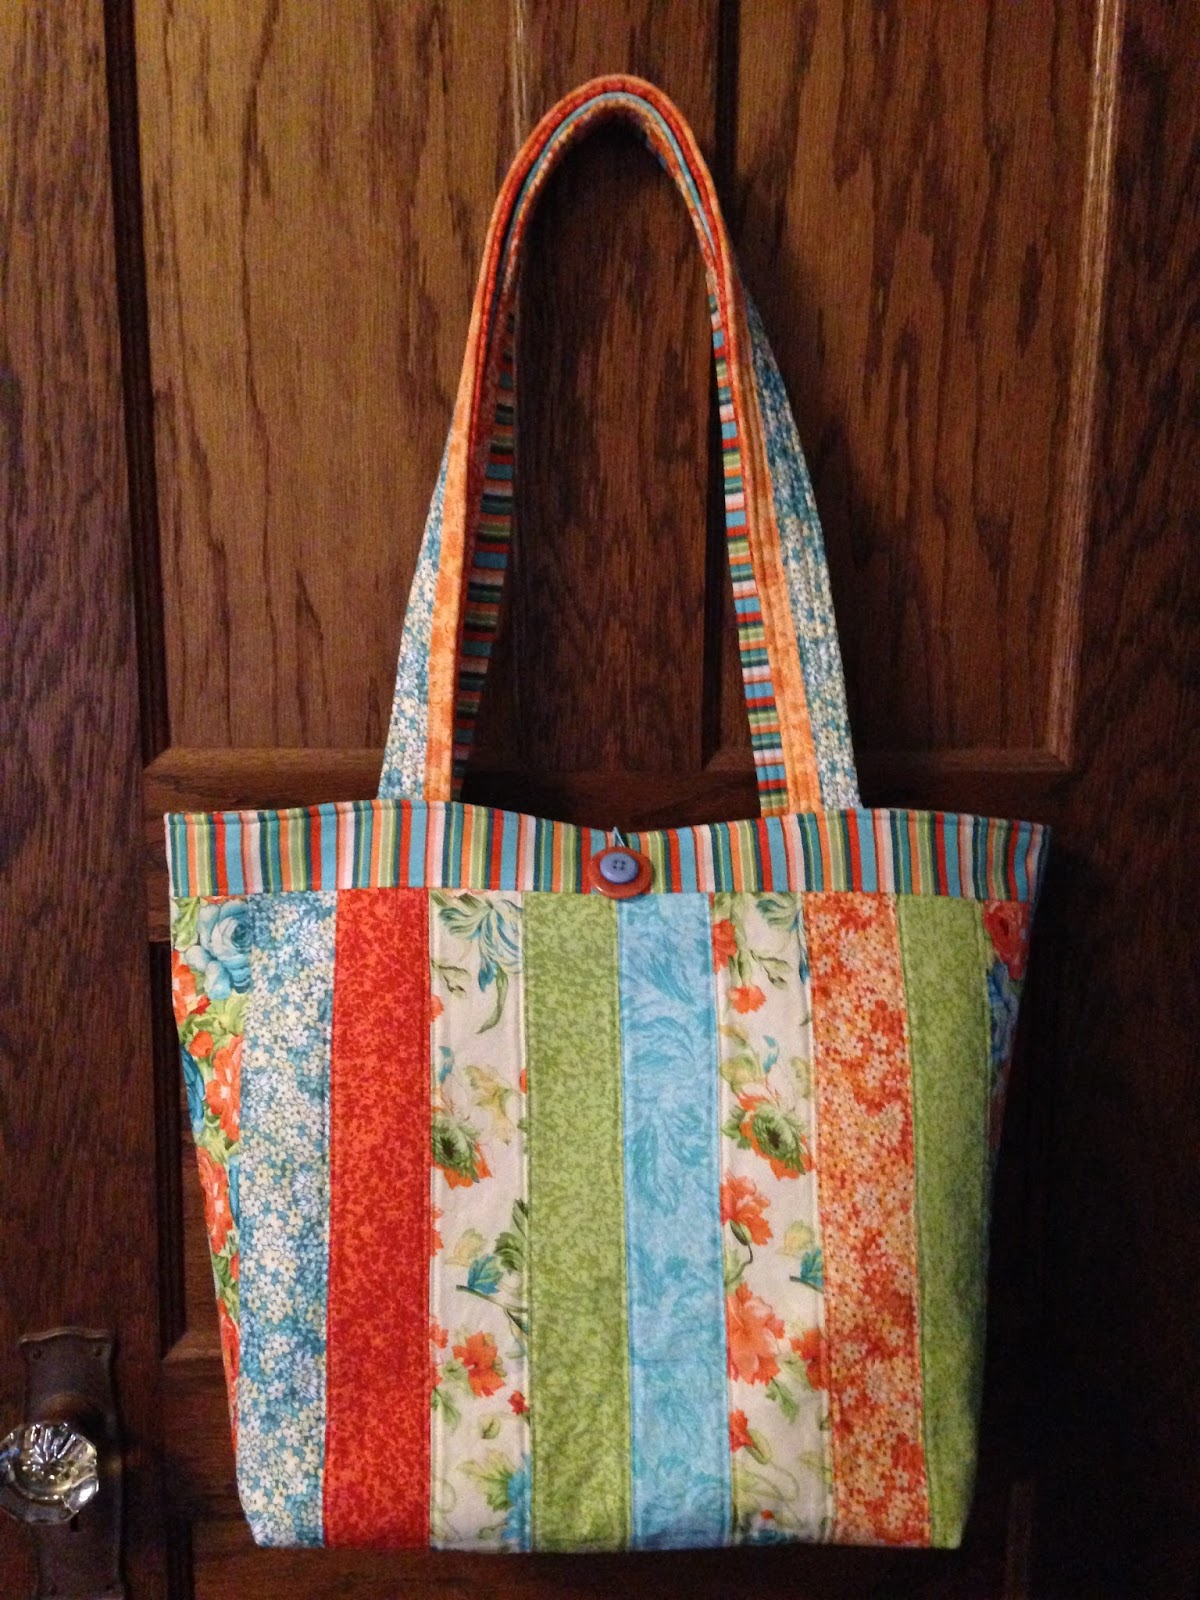 Barbara Huber Designs: Jelly Roll Tote Bag- Love those precuts!